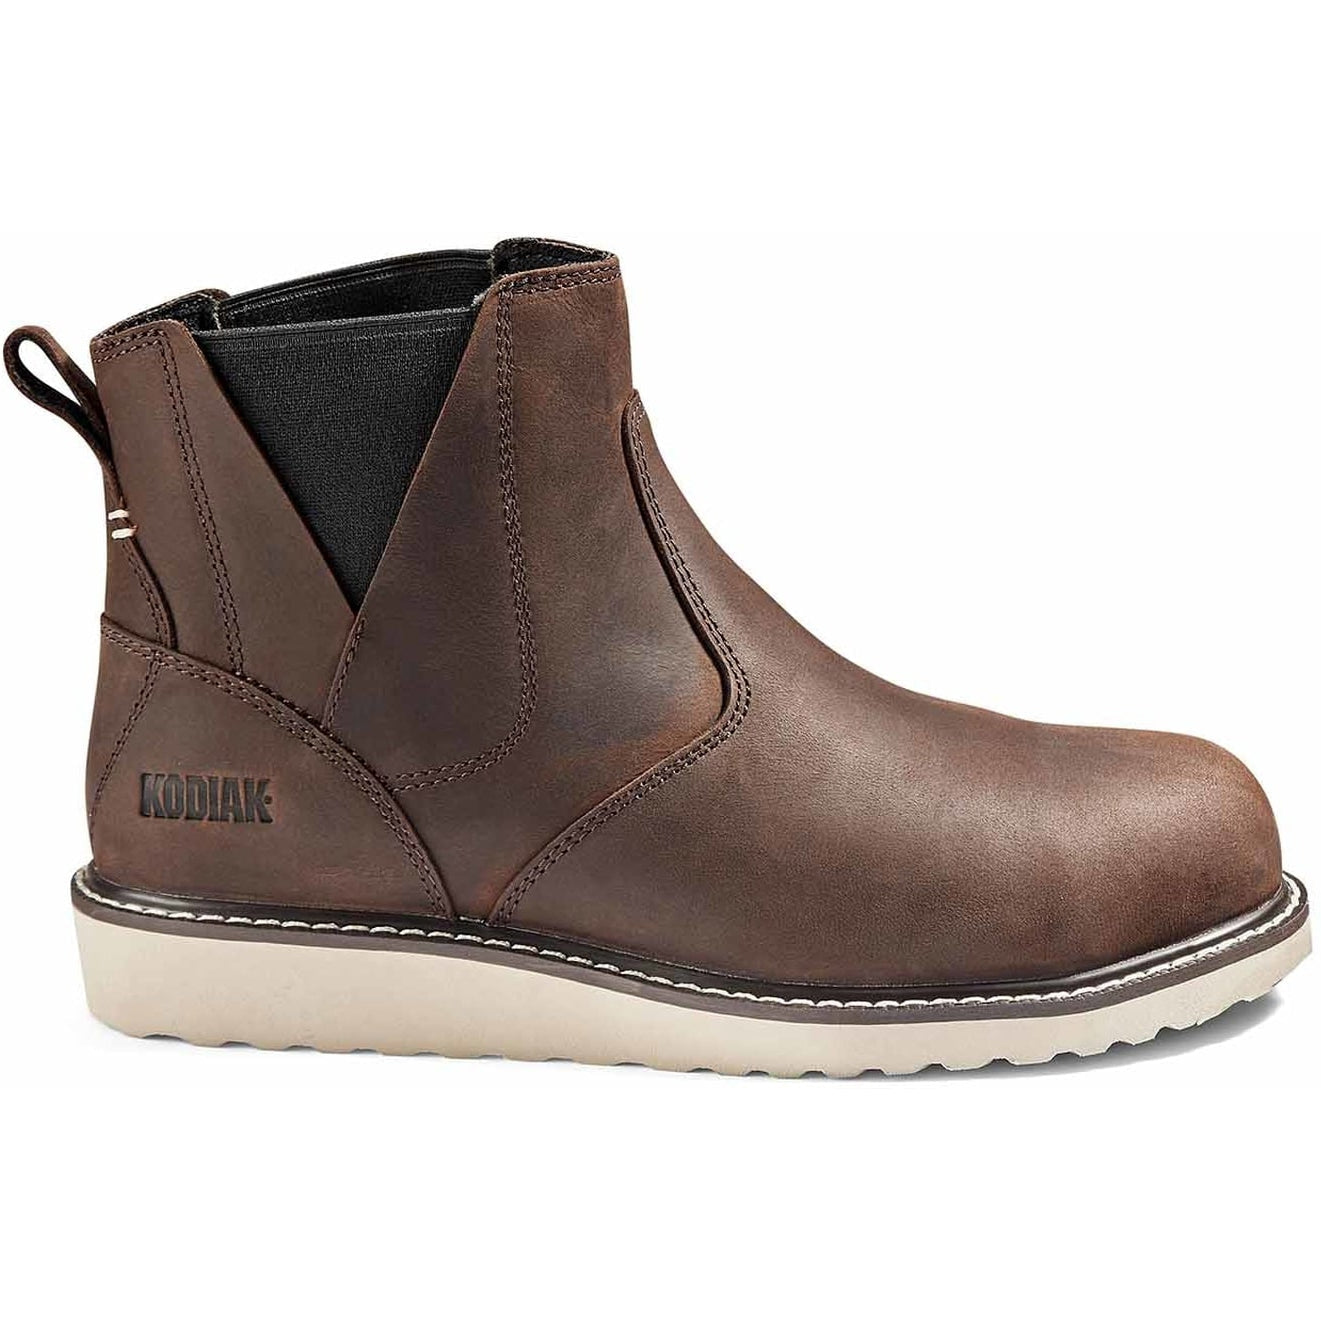 Kodiak Women's Whitton ST Puncture Resist Safety Work Boot -Brown- 4TEXDB 5 / Medium / Brown - Overlook Boots